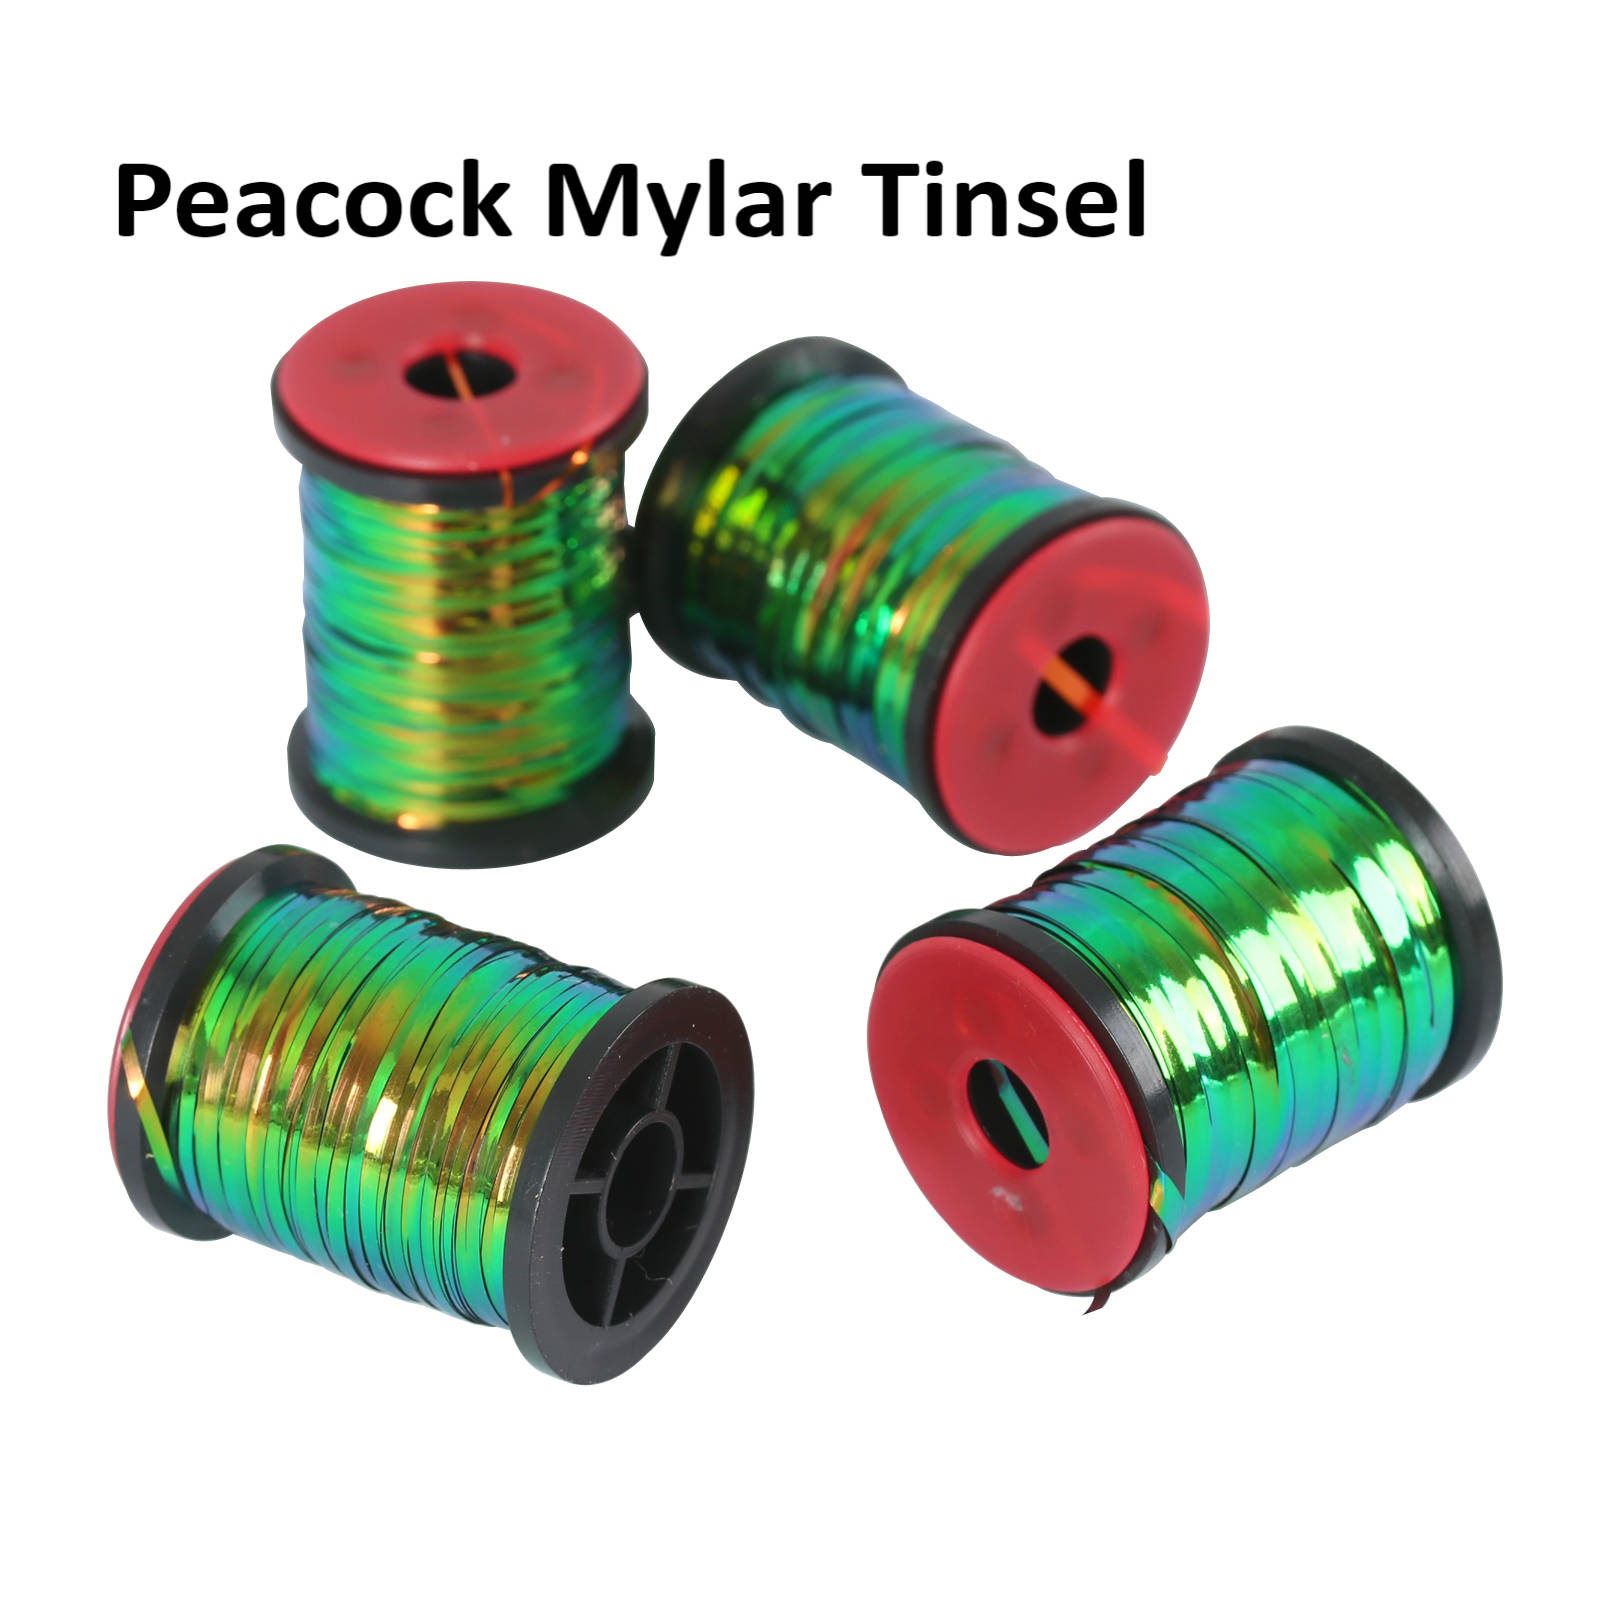 peacock mylar tinsel孔雀色彩箔线